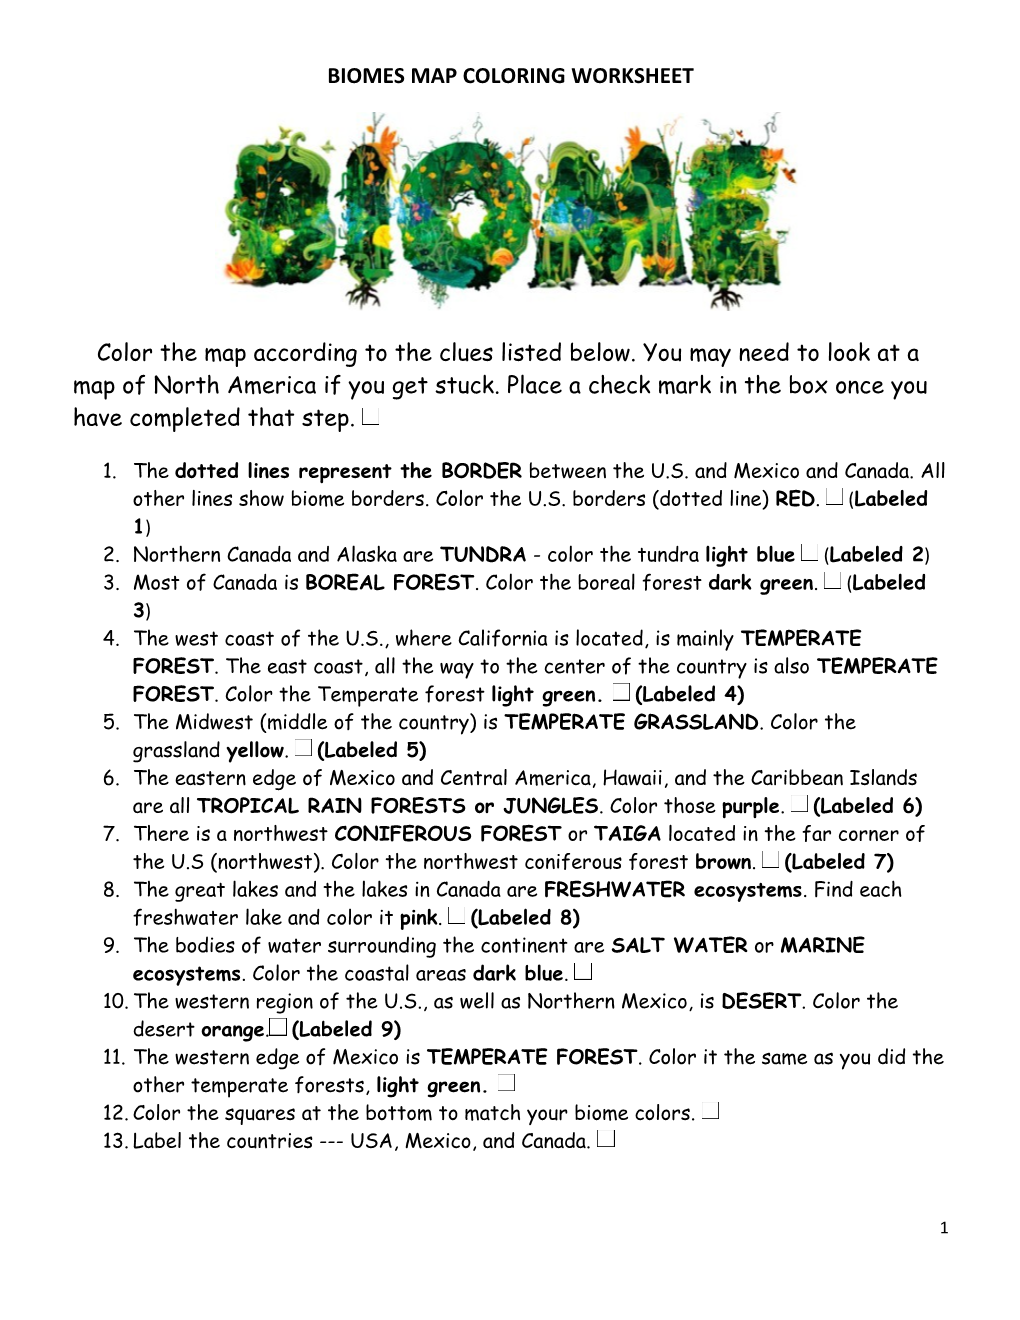 Biomes Map Coloring Worksheet